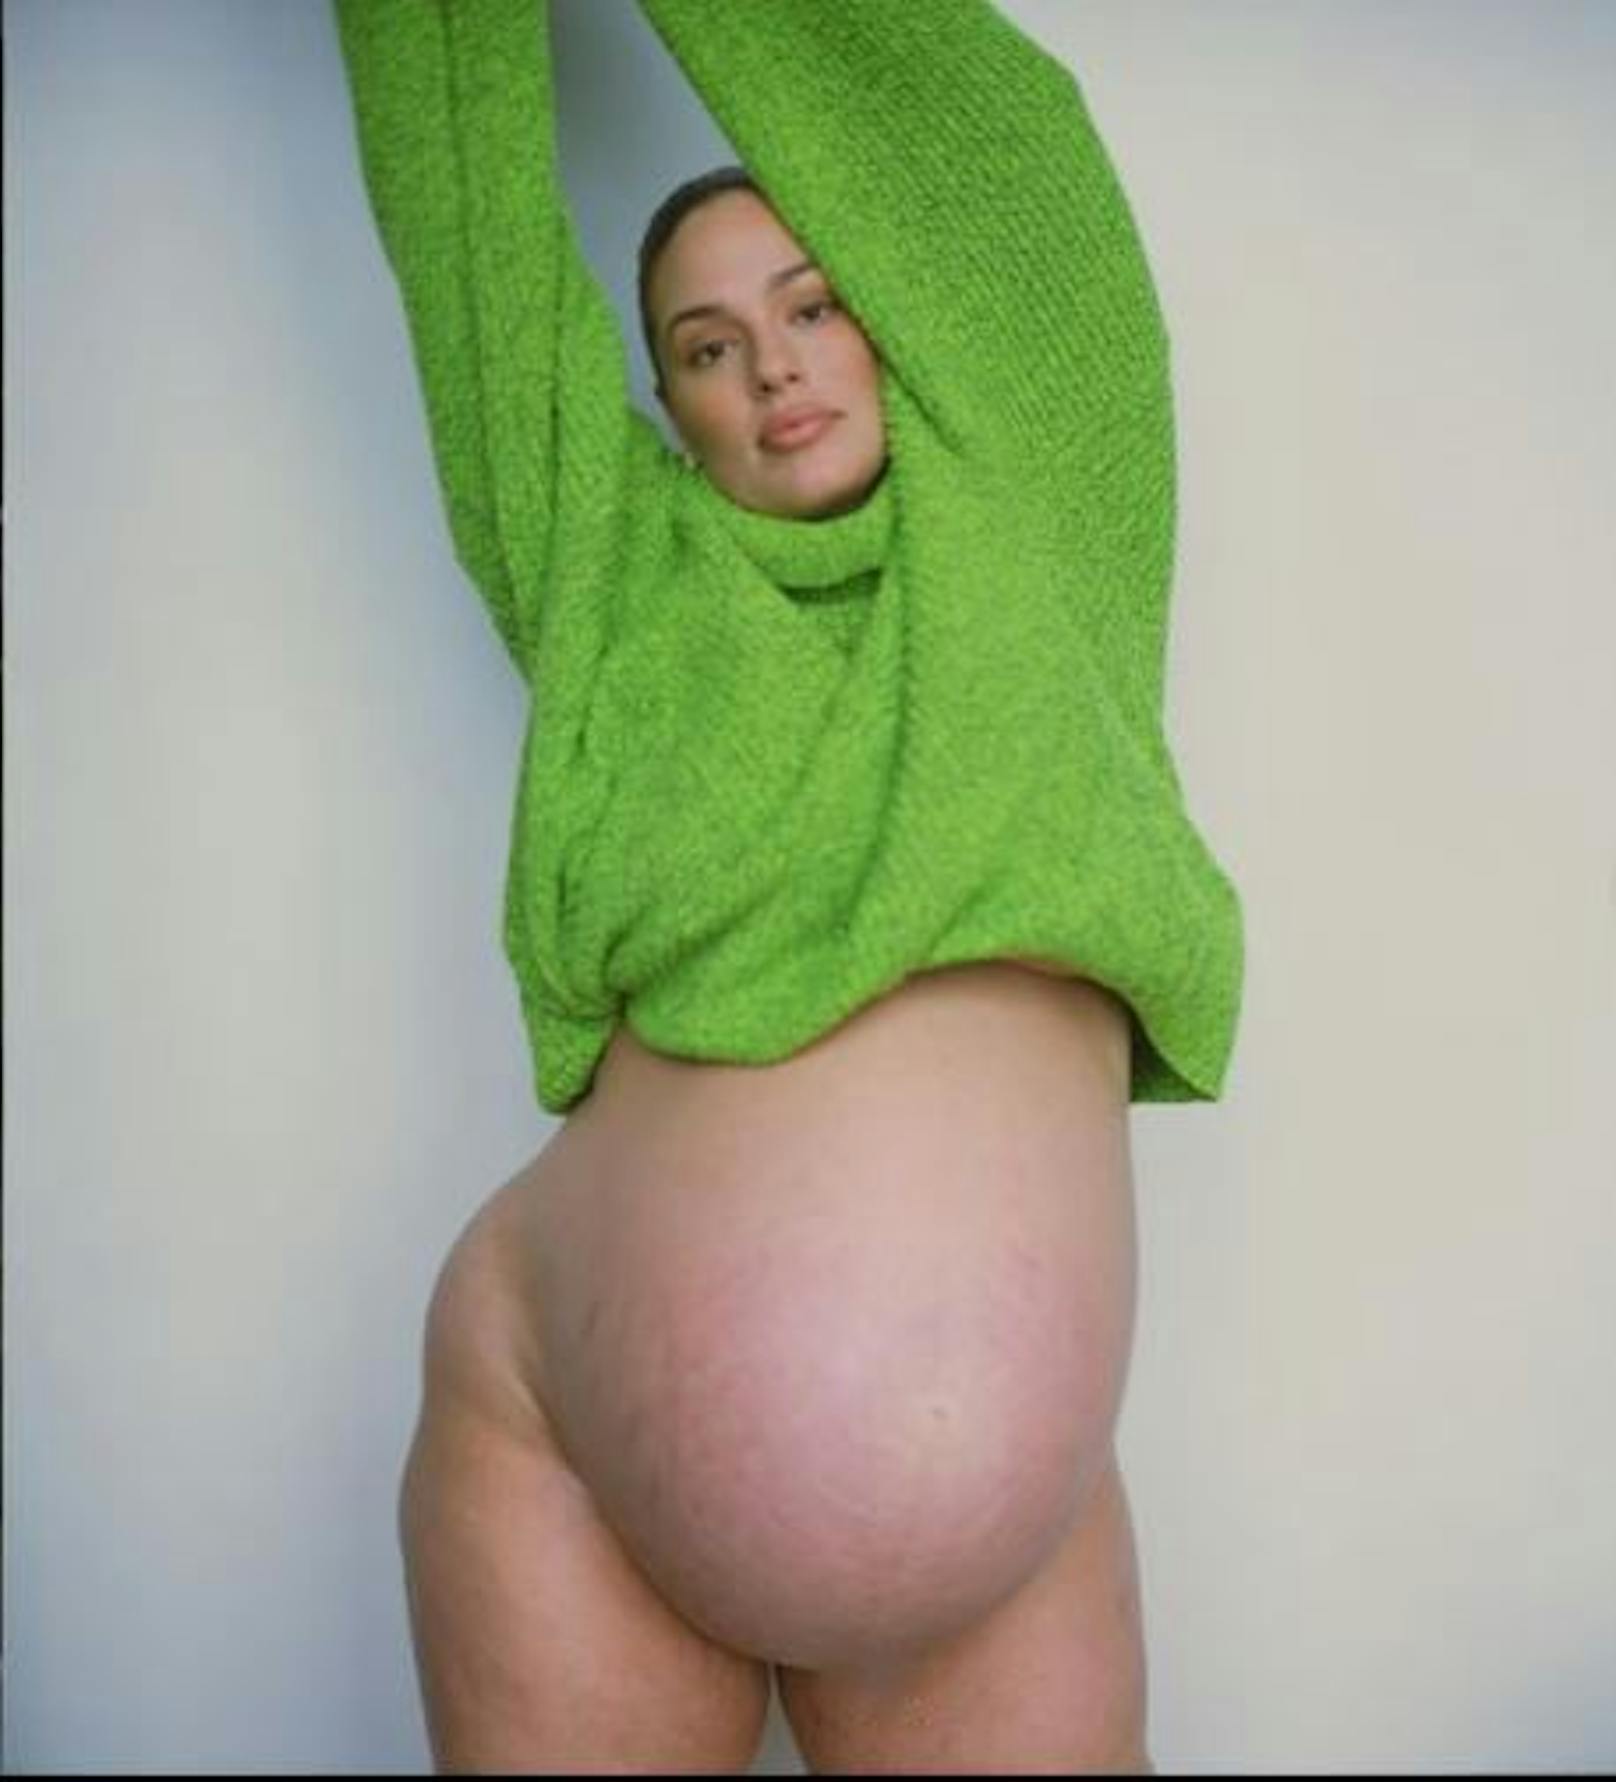 Plus-Size-Model Ashley Graham brachte kurz nach diesem Fotoshooting ihre Zwillinge auf die Welt.